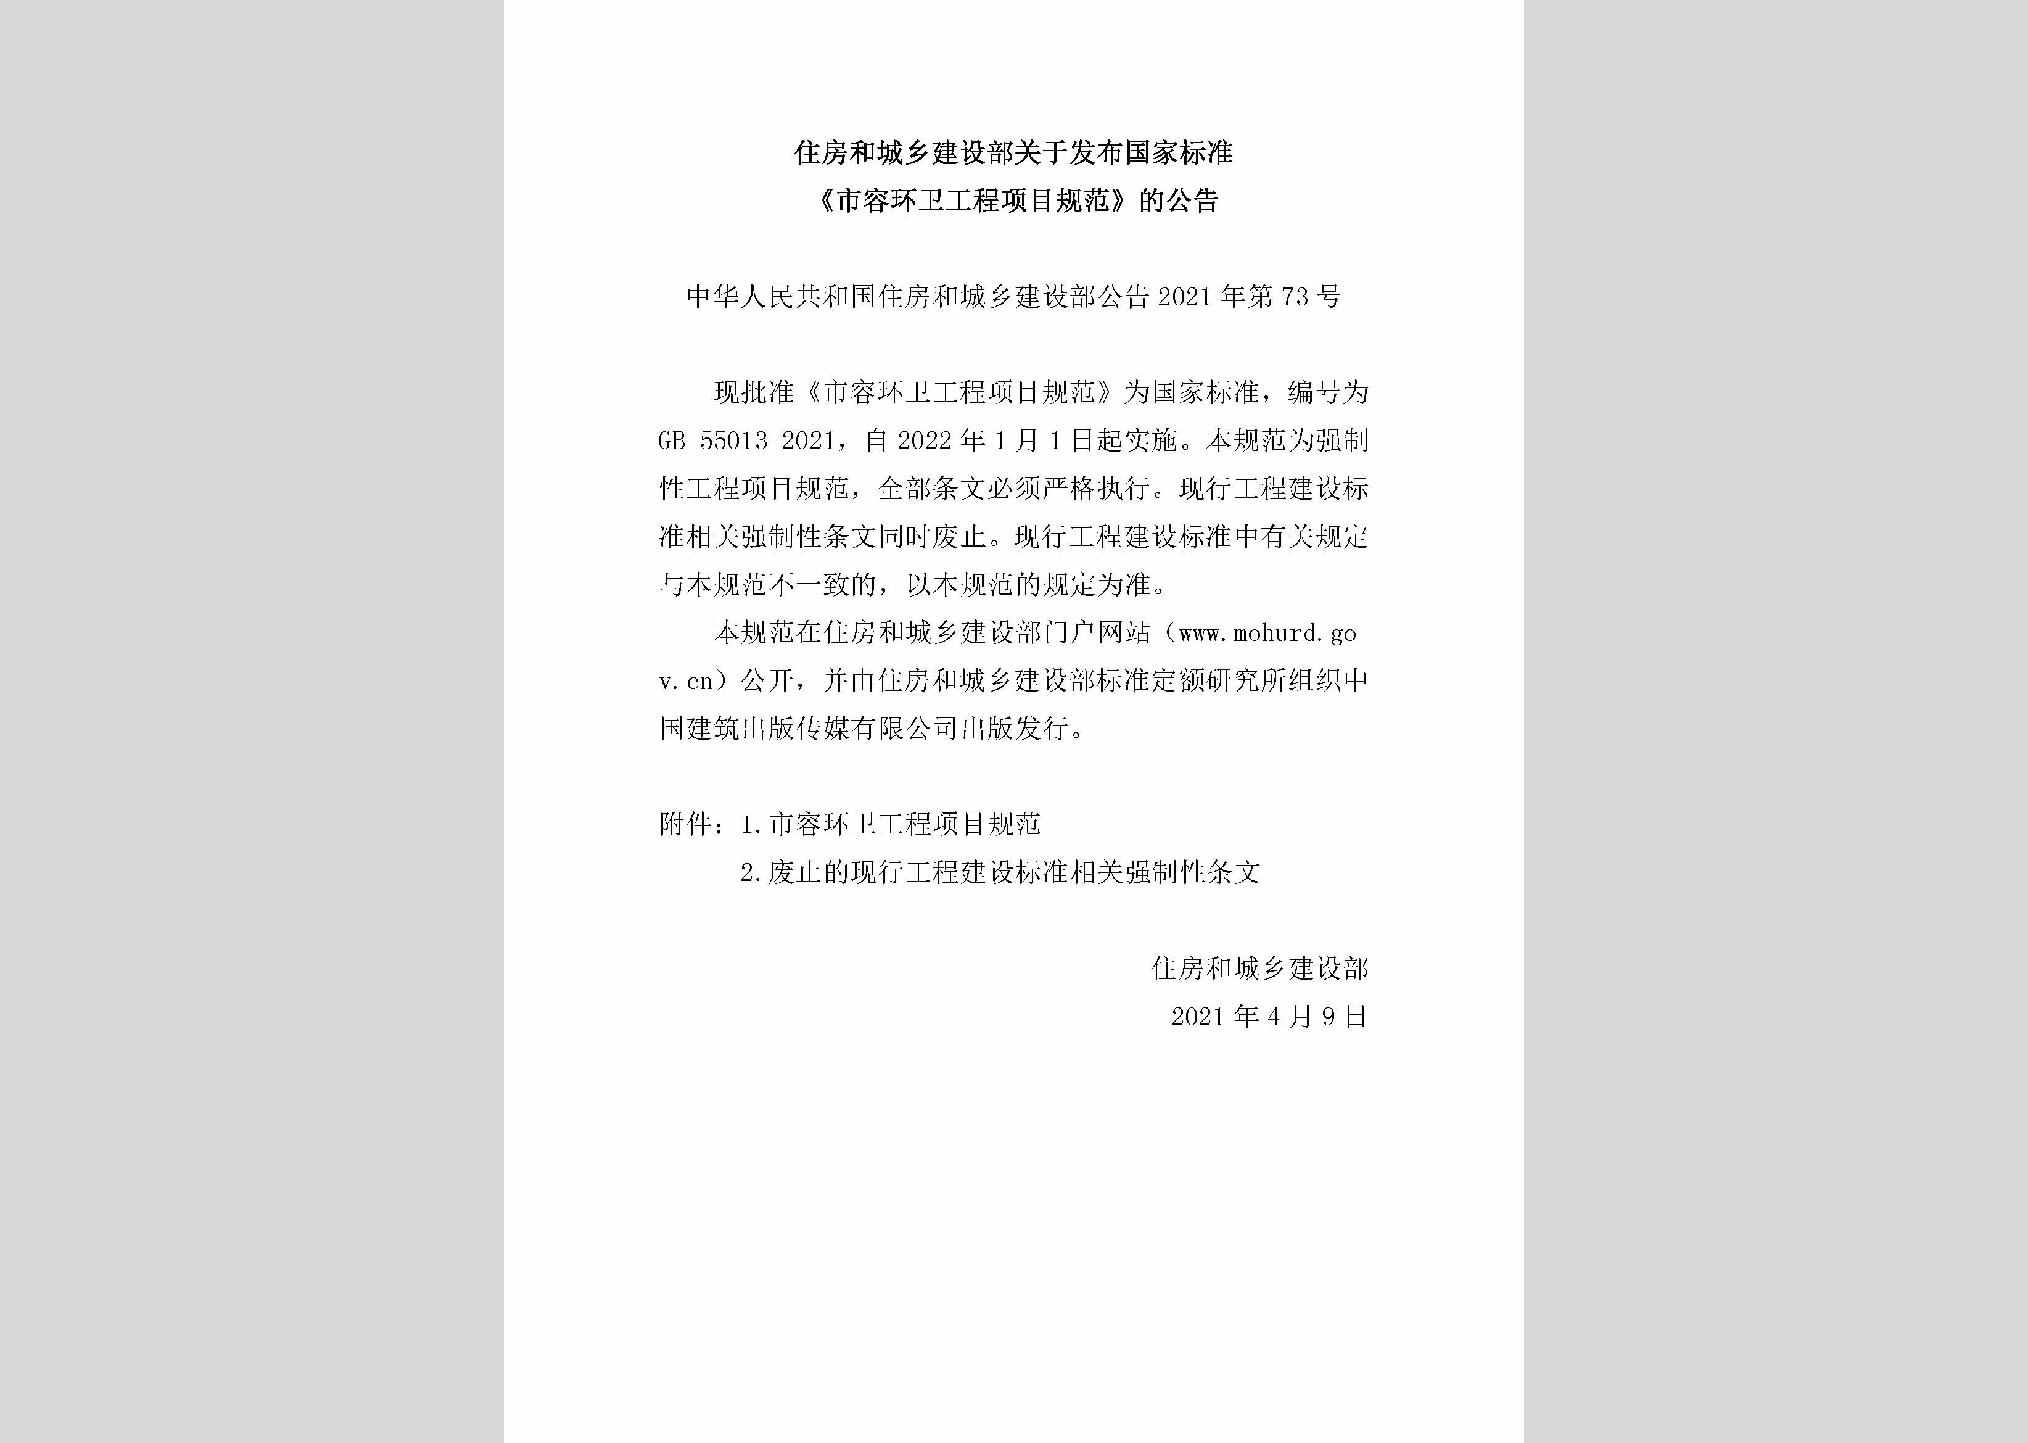 中华人民共和国住房和城乡建设部公告2021年第73号：住房和城乡建设部关于发布国家标准《市容环卫工程项目规范》的公告